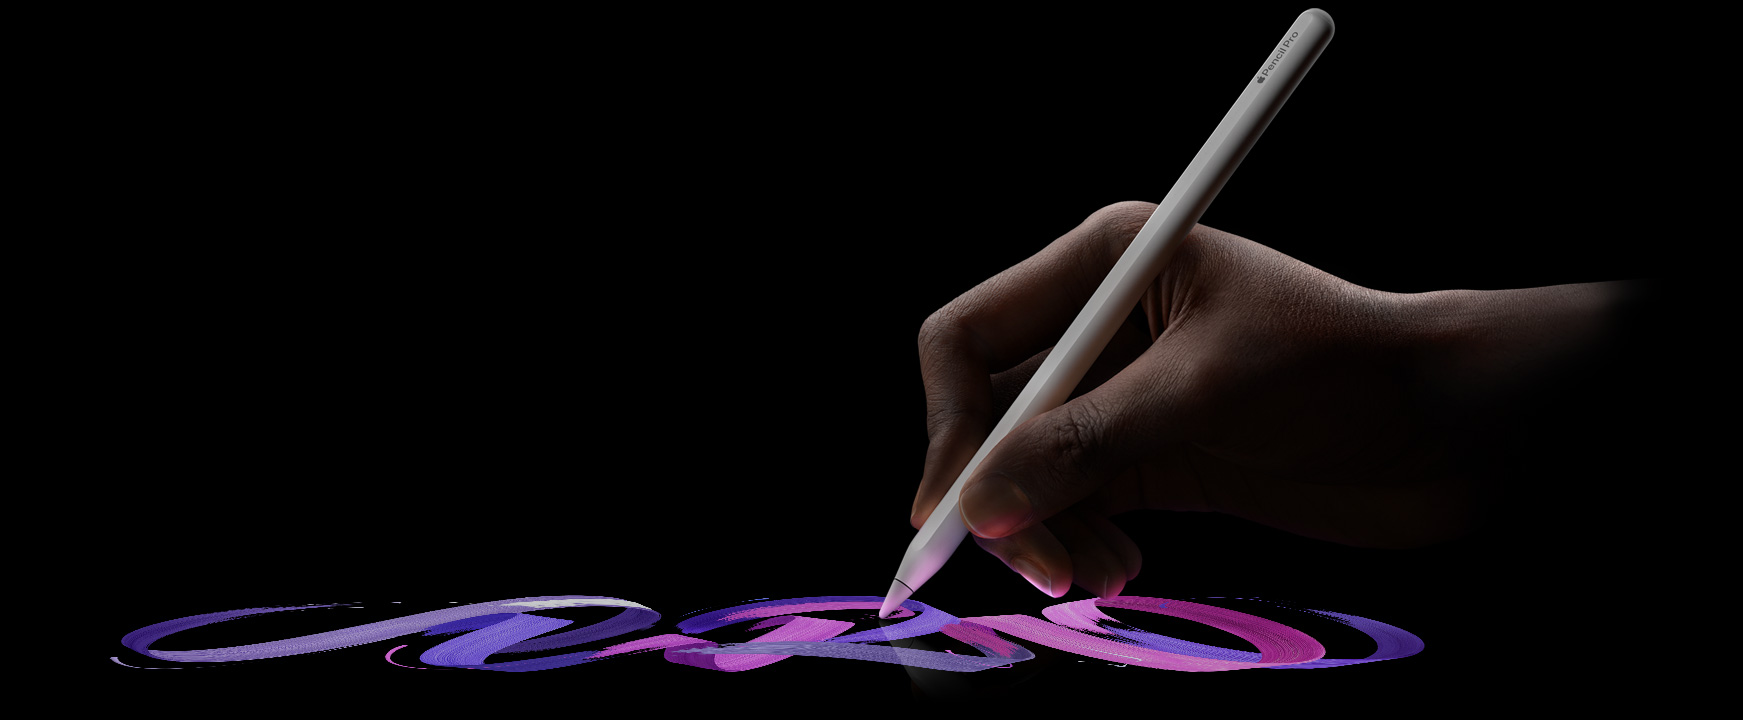 مستخدم يحمل قلم Apple Pro وخط فرشاة حيوي يتبع